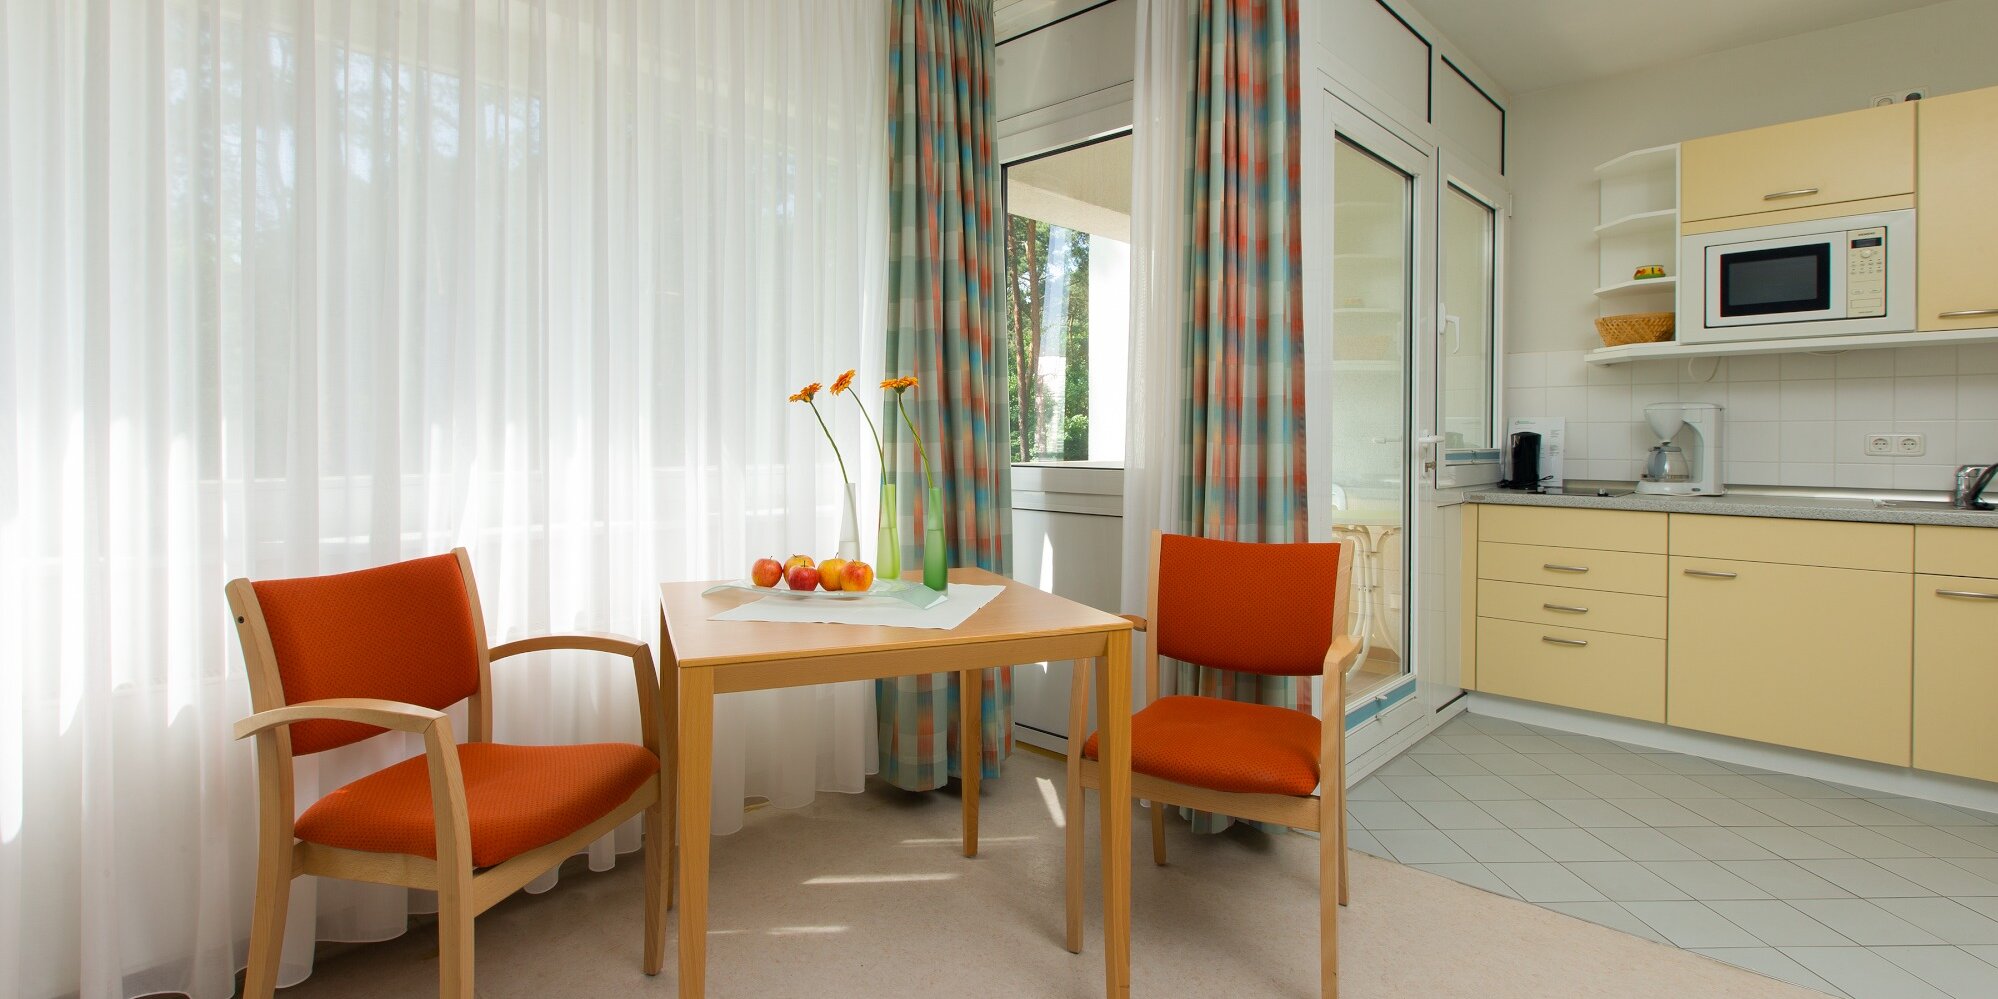 Modern eingerichtetes Appartement mit einer Sitzecke, bestehend aus einem kleinen Tisch und zwei Stühlen. Eine kleine komplett ausgestattete Küchenzeile schließt direkt an den Balkon an.